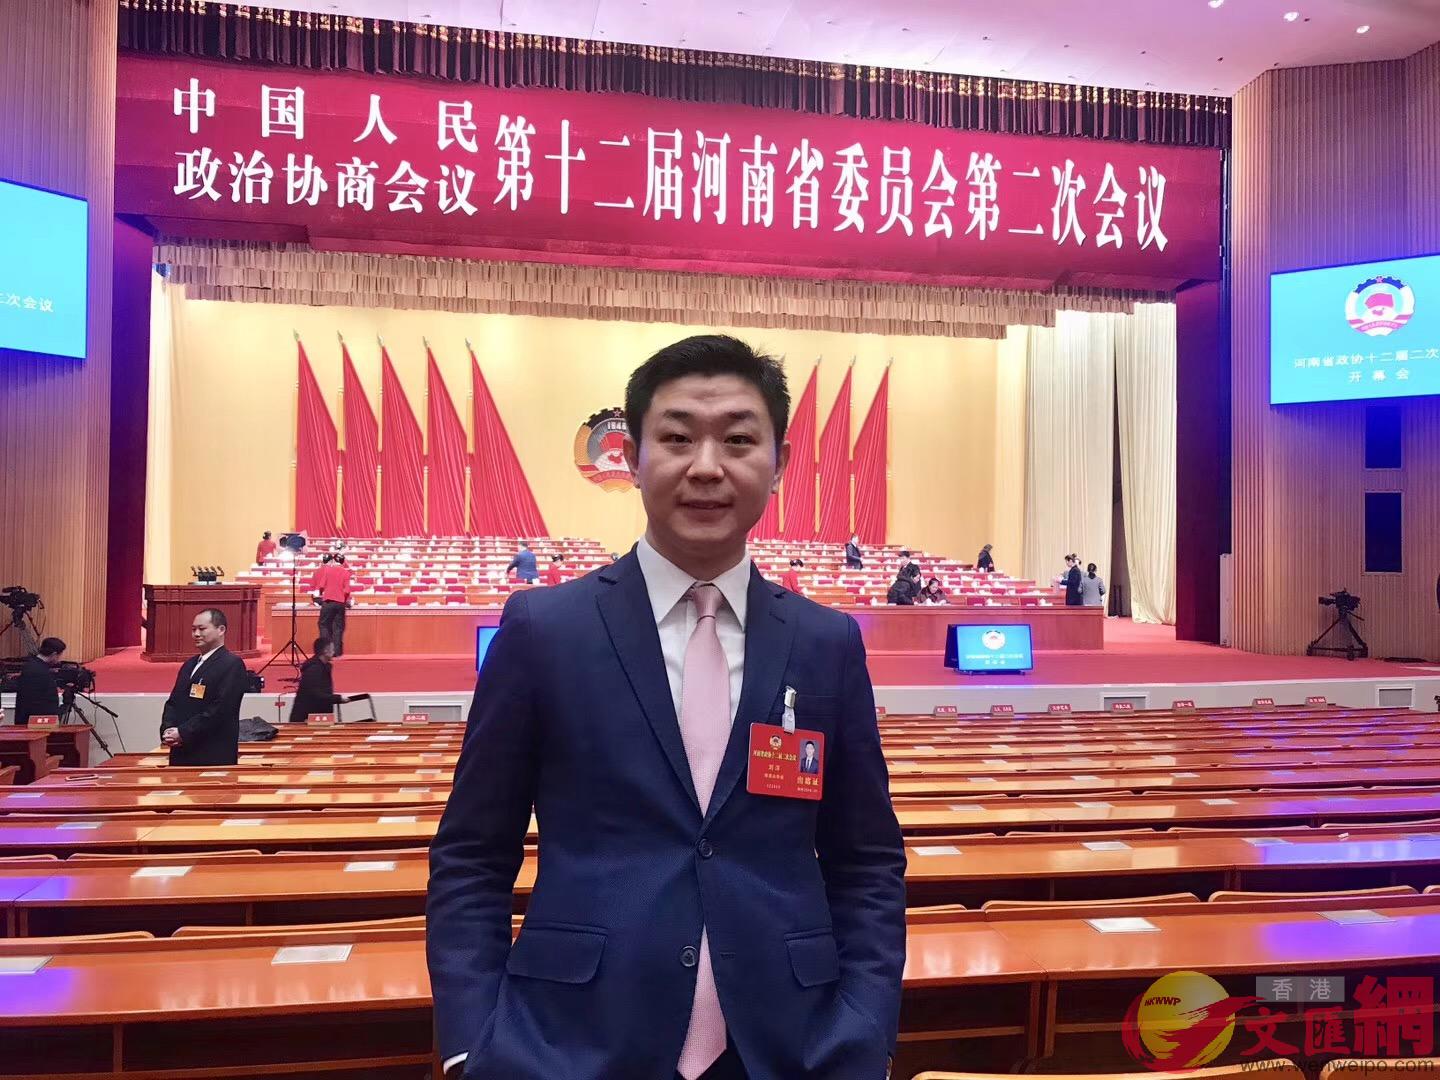  劉洋14日在鄭州參加河南省政協十二屆二次會議開幕會